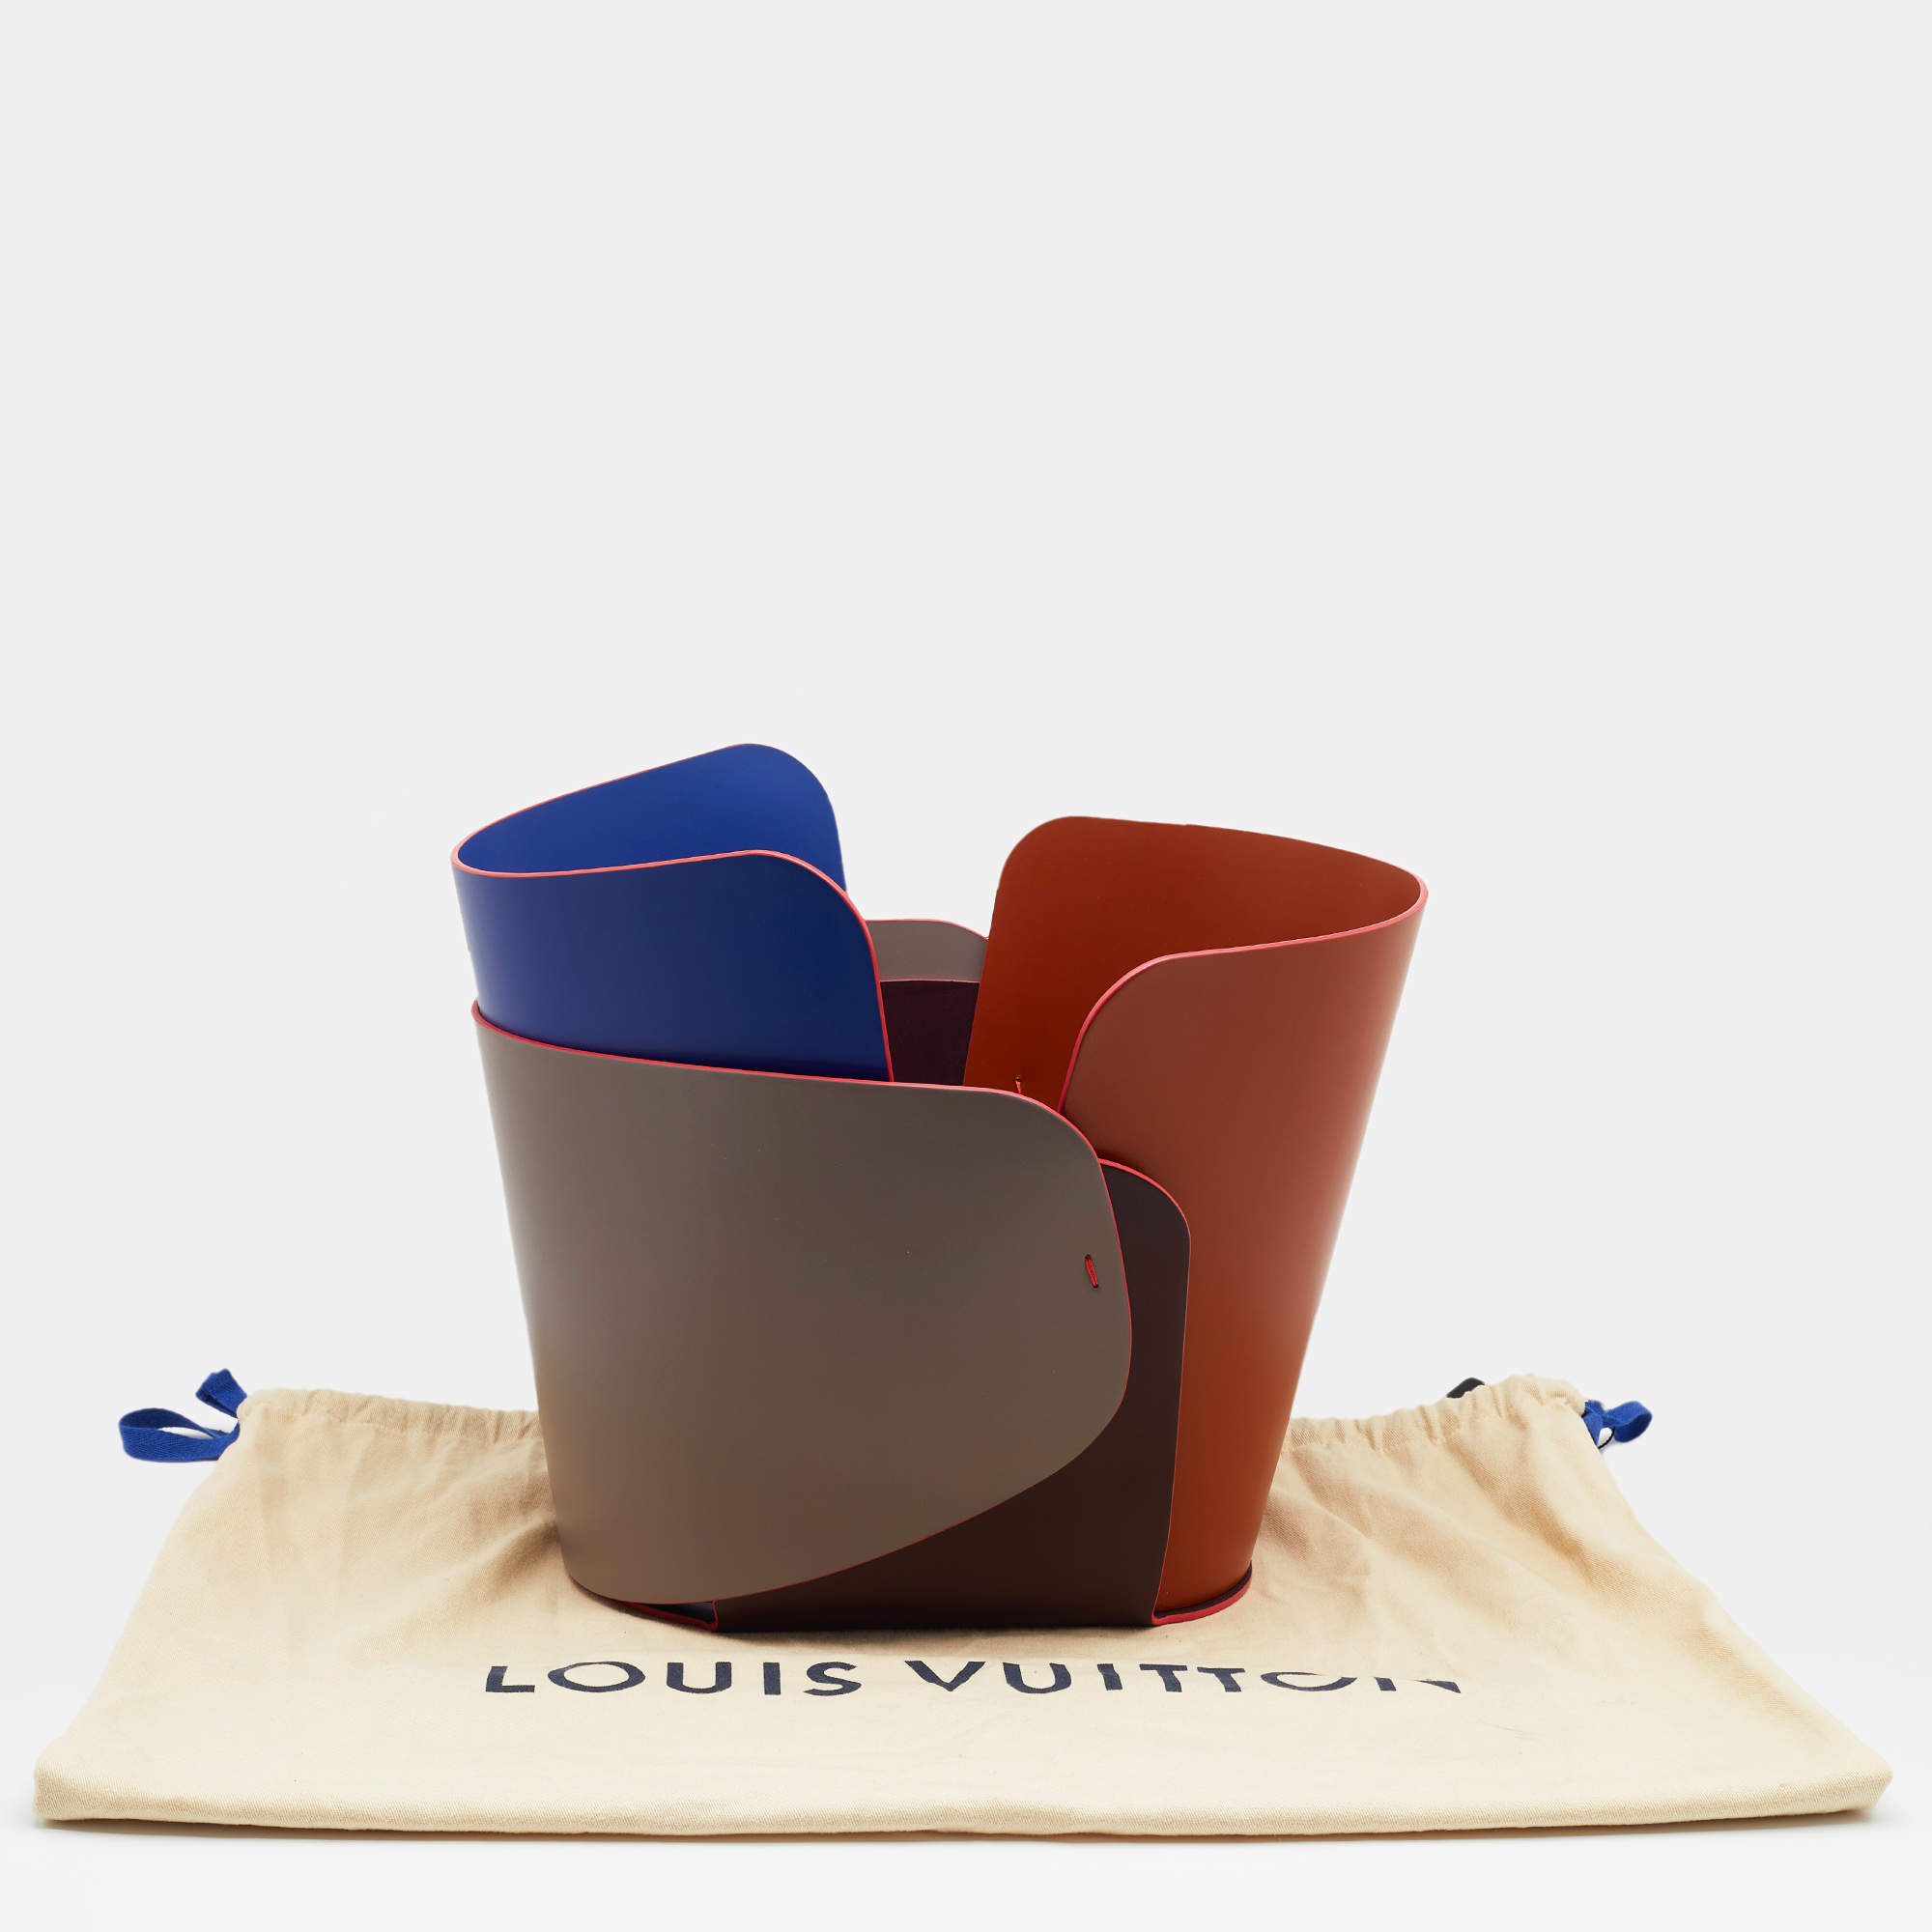 Patricia Urquiola - Louis Vuitton Overlay Bowl design Patricia